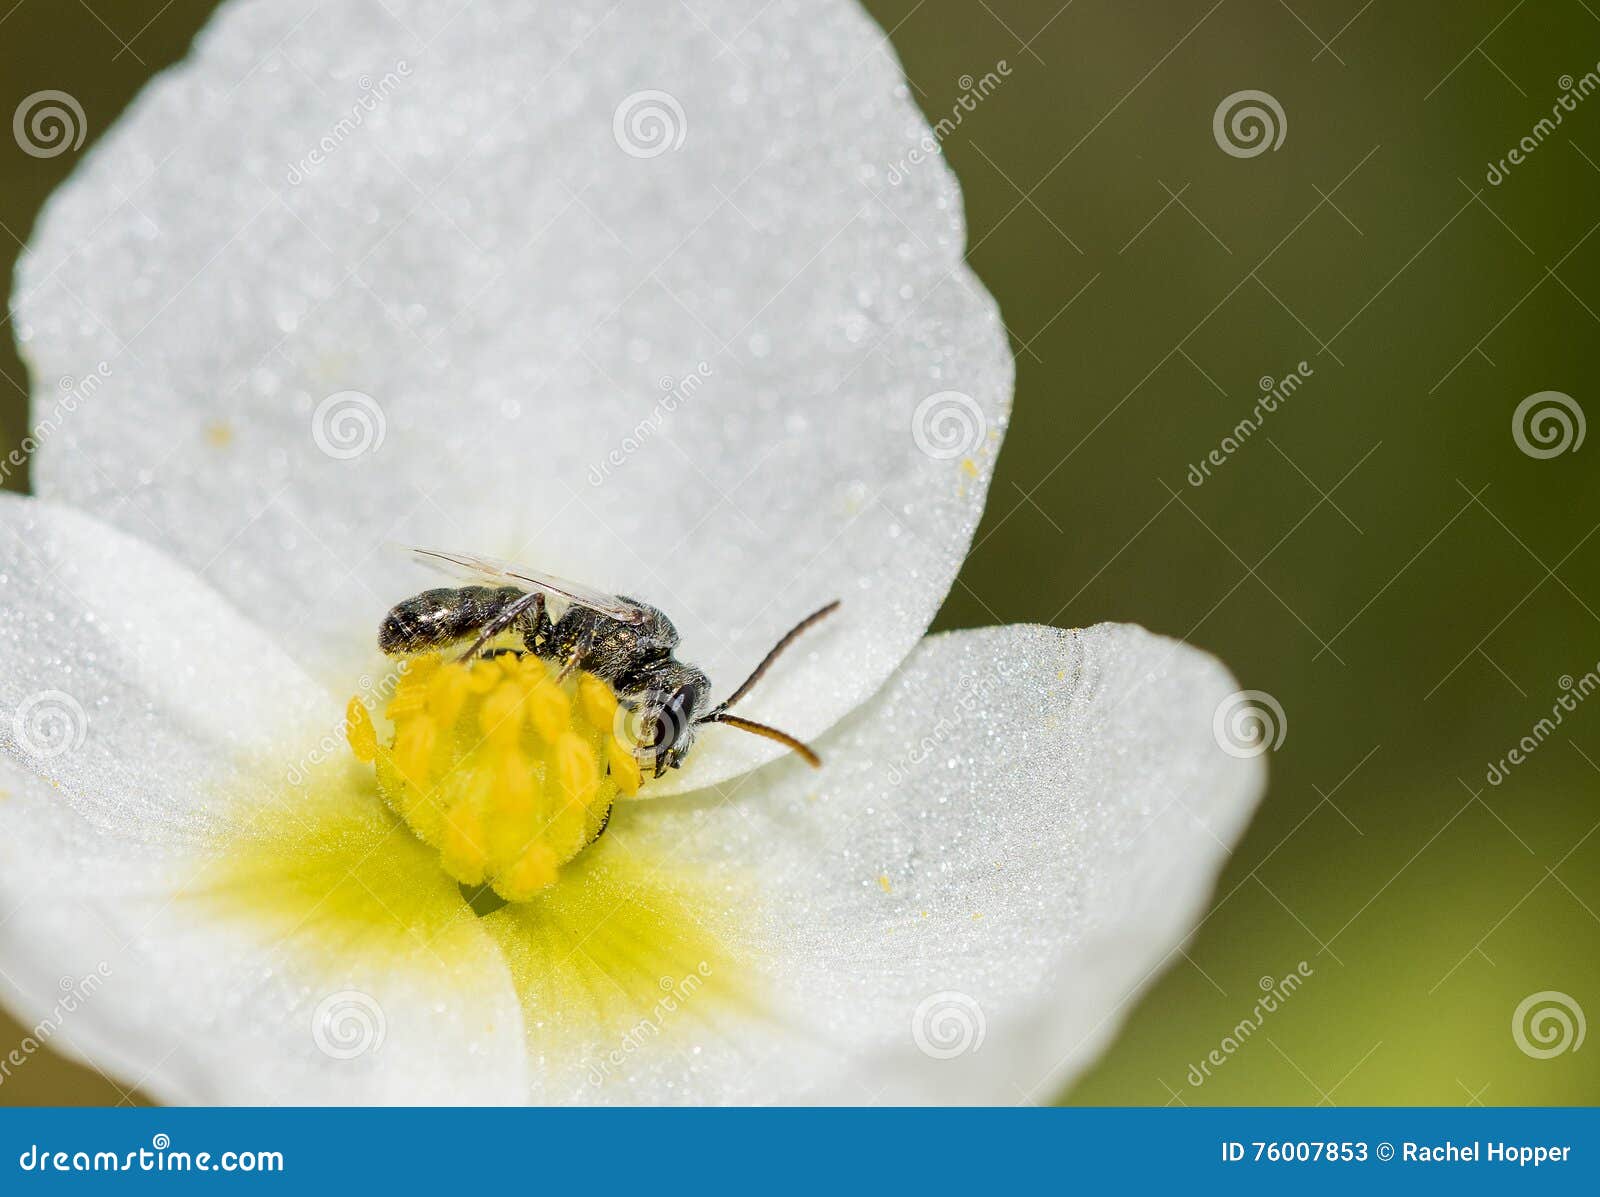 Μέλισσα ιδρώτα (Halictidae) στις εγγενείς εγκαταστάσεις (Arrowhead) στο Grassl. Μέλισσα ιδρώτα στις εγγενείς εγκαταστάσεις (Arrowhead) στα λιβάδια του Κολοράντο Το Halictidae είναι το δεύτερο - μεγαλύτερη οικογένεια των μελισσών Apoidea Τα είδη Halictid εμφανίζονται σε όλο τον κόσμο και είναι συνήθως σκοτεινός-χρωματισμένα και συχνά μεταλλικά στην εμφάνιση